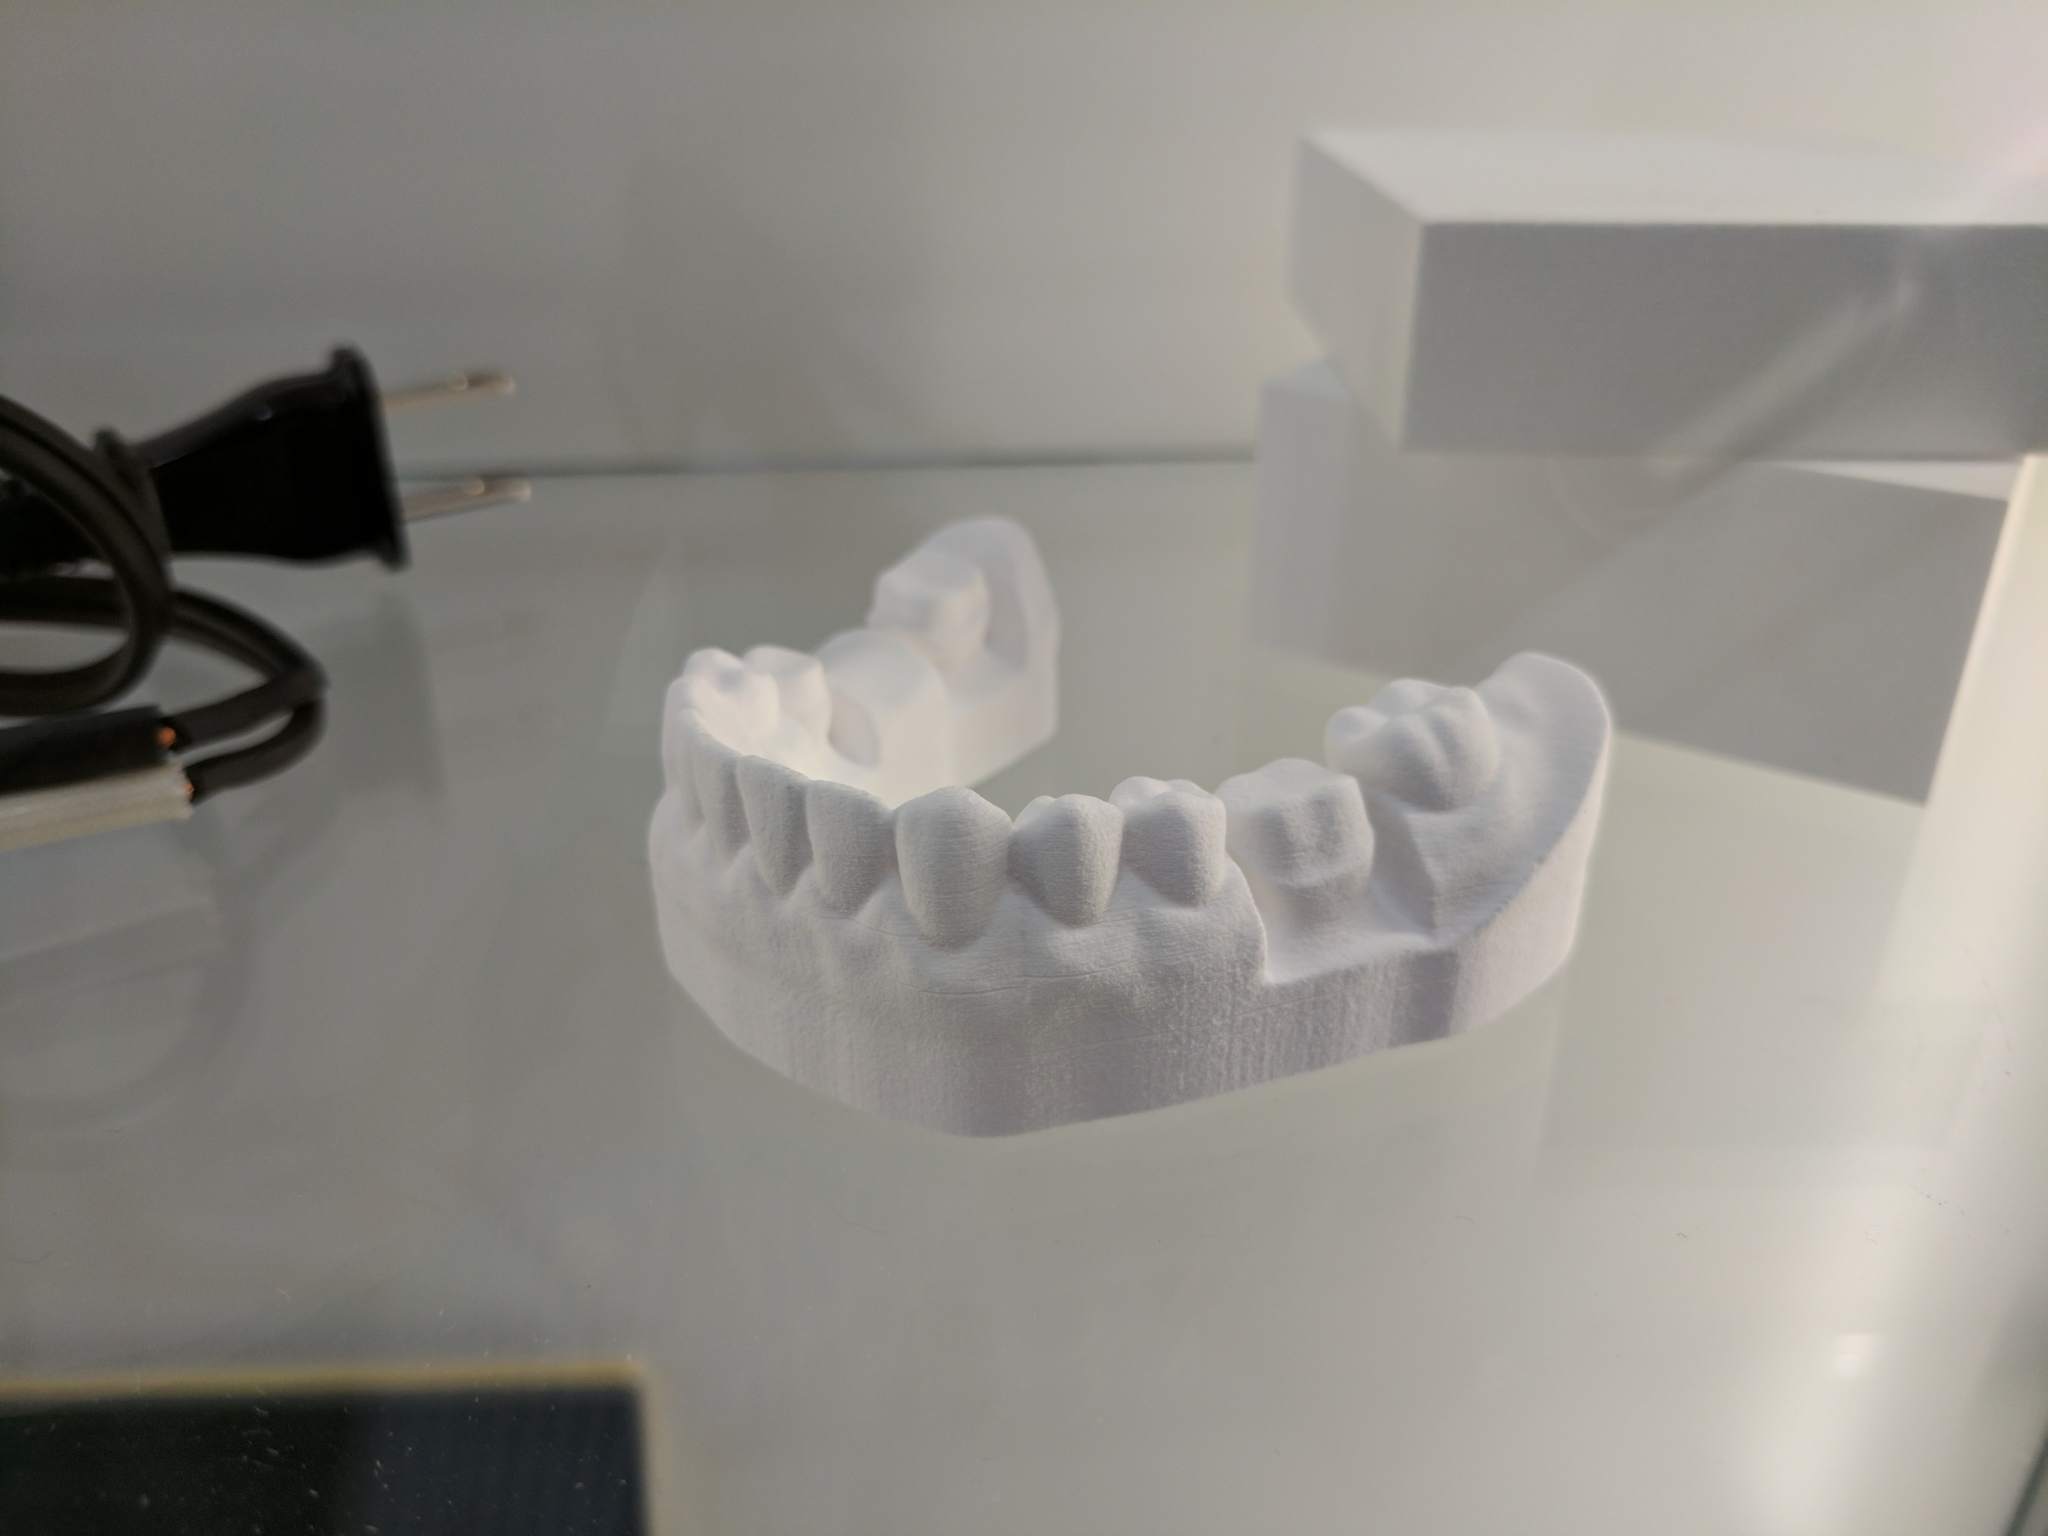 Ceramic dental impression from the Roland AG ceramics printer.